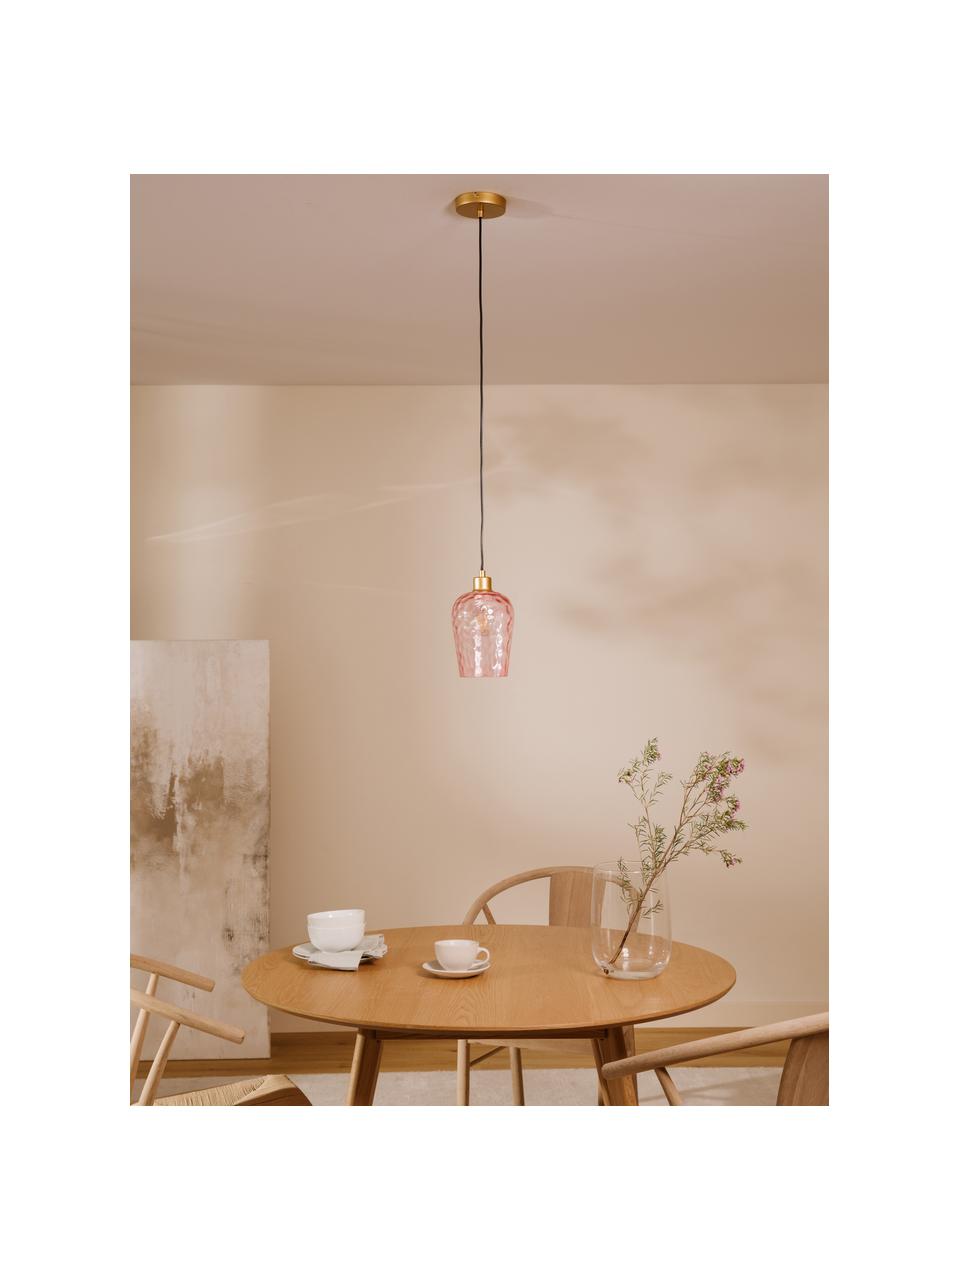 Kleine hanglamp Rania in roze, Lampenkap: glas, Baldakijn: gepoedercoat metaal, Decoratie: gepoedercoat metaal, Roze, goudkleurig, Ø 14 x H 20 cm